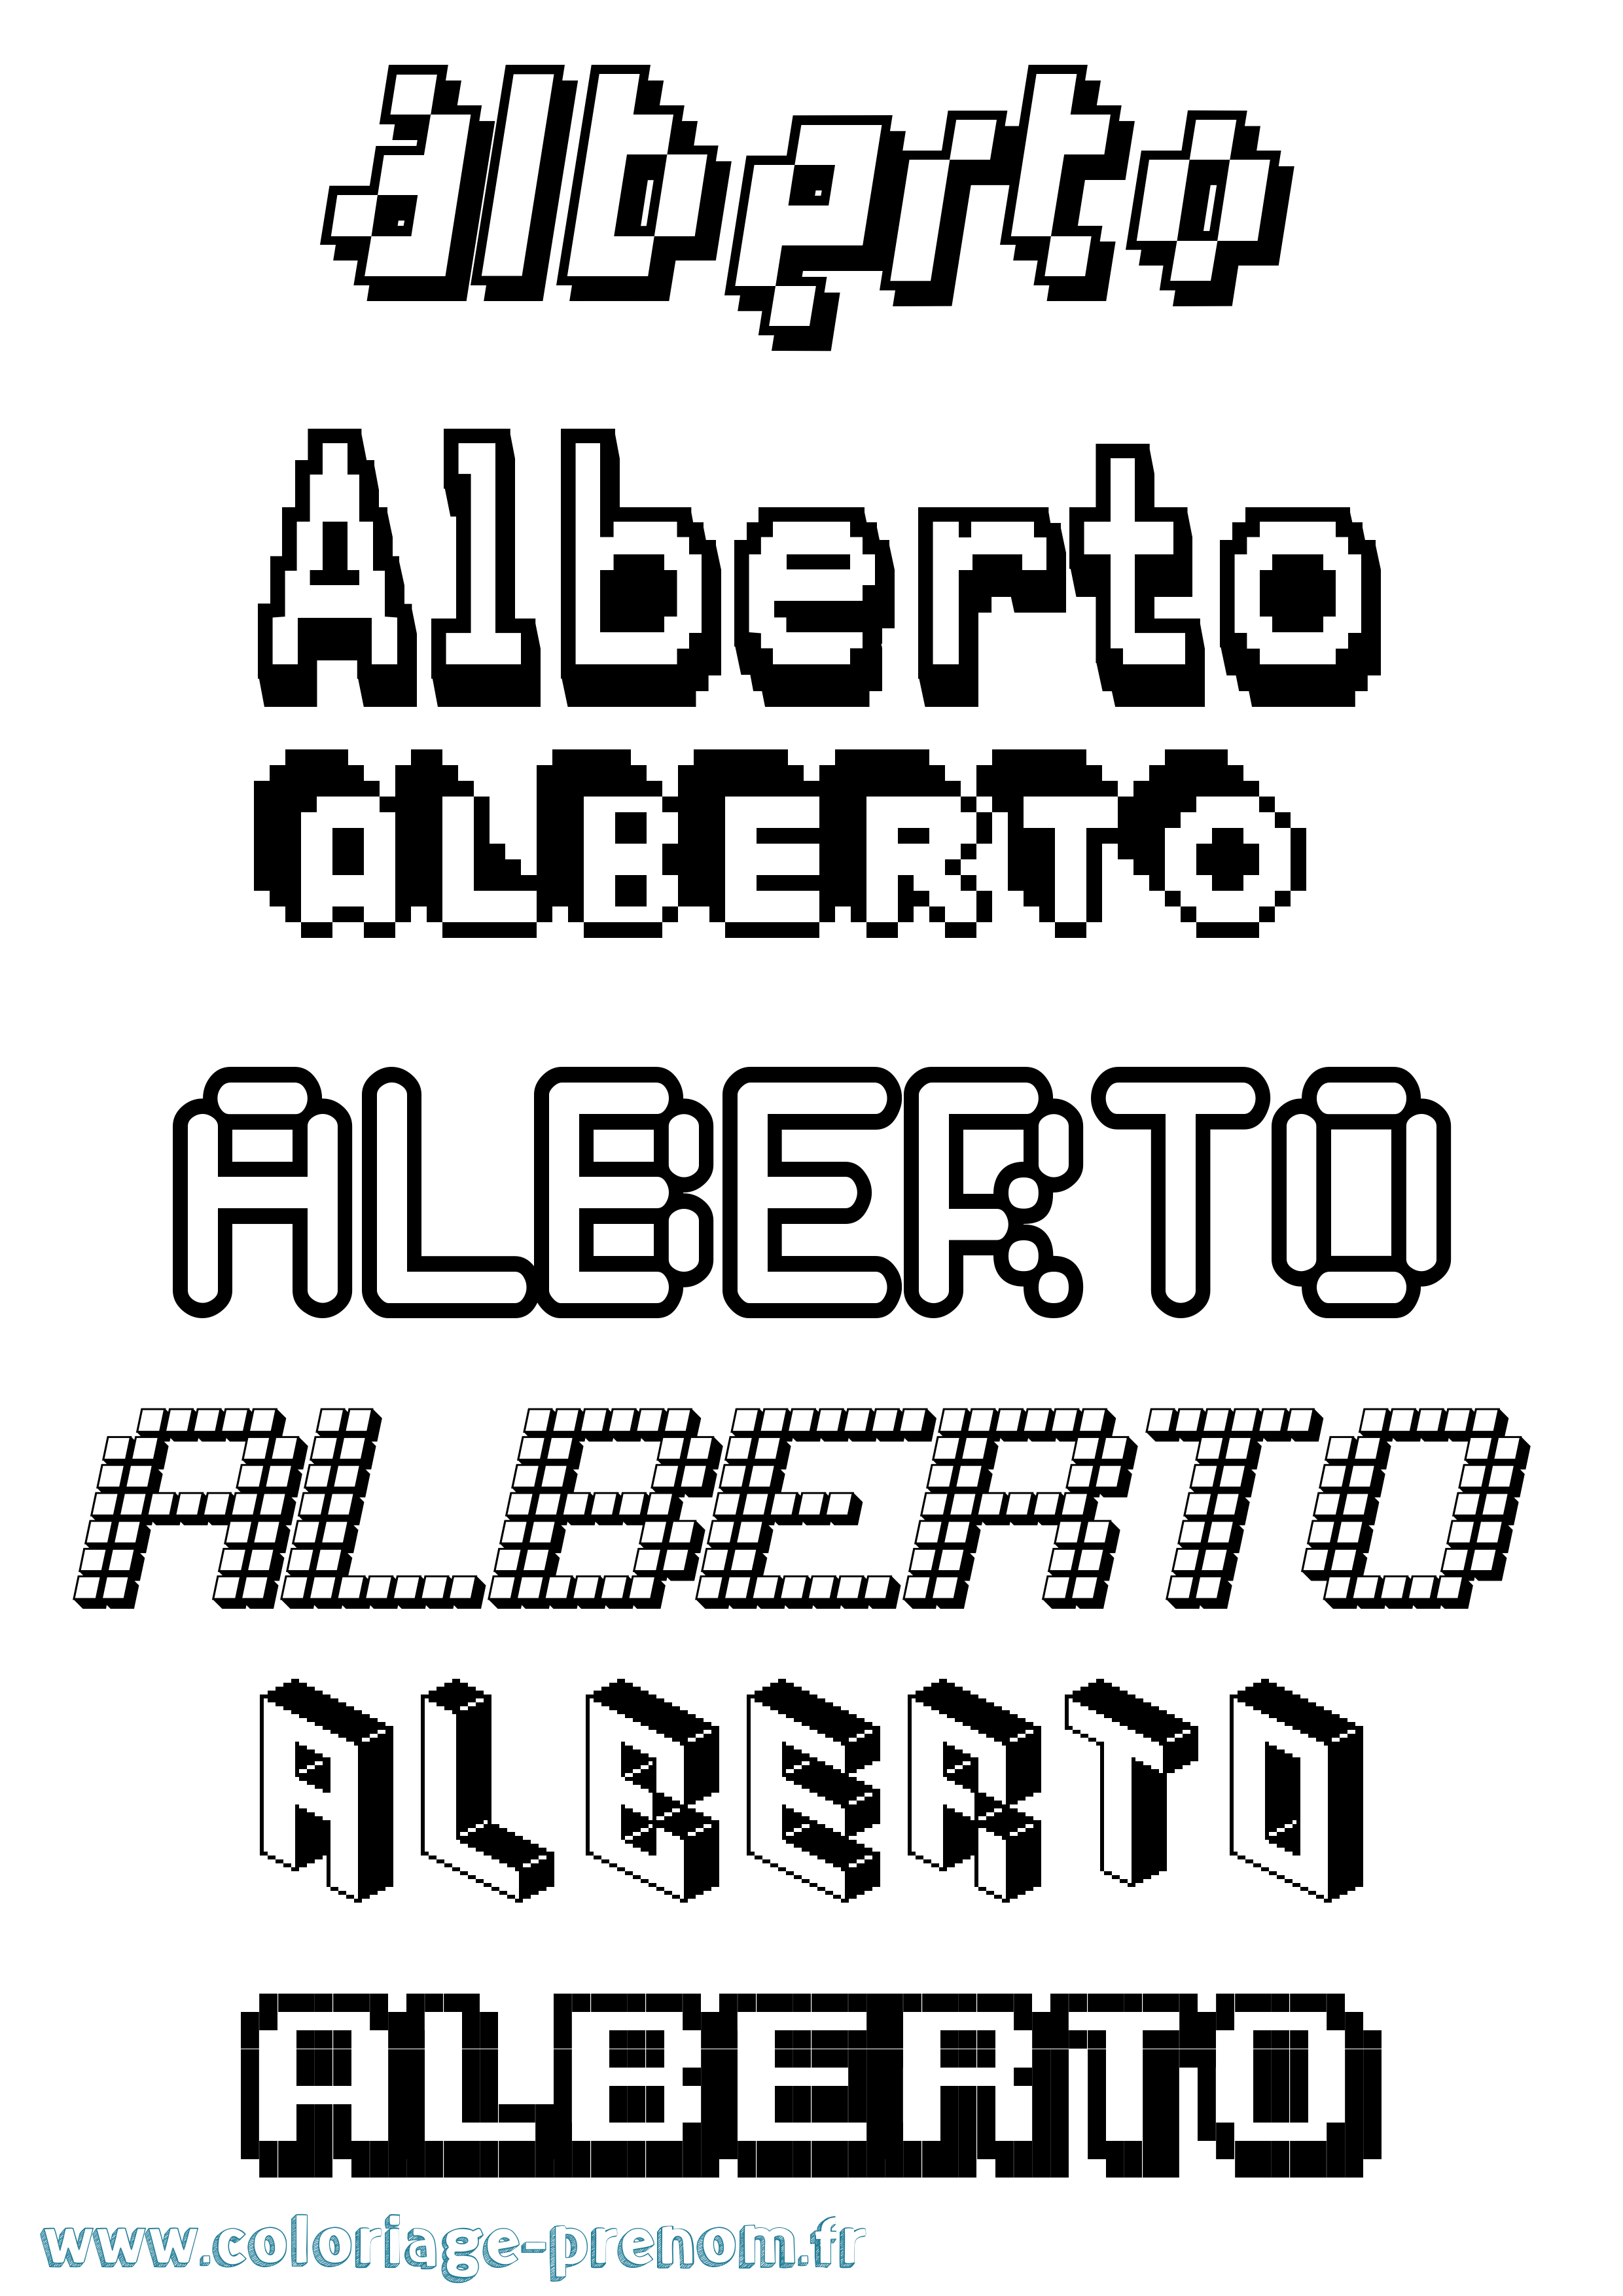 Coloriage prénom Alberto Pixel